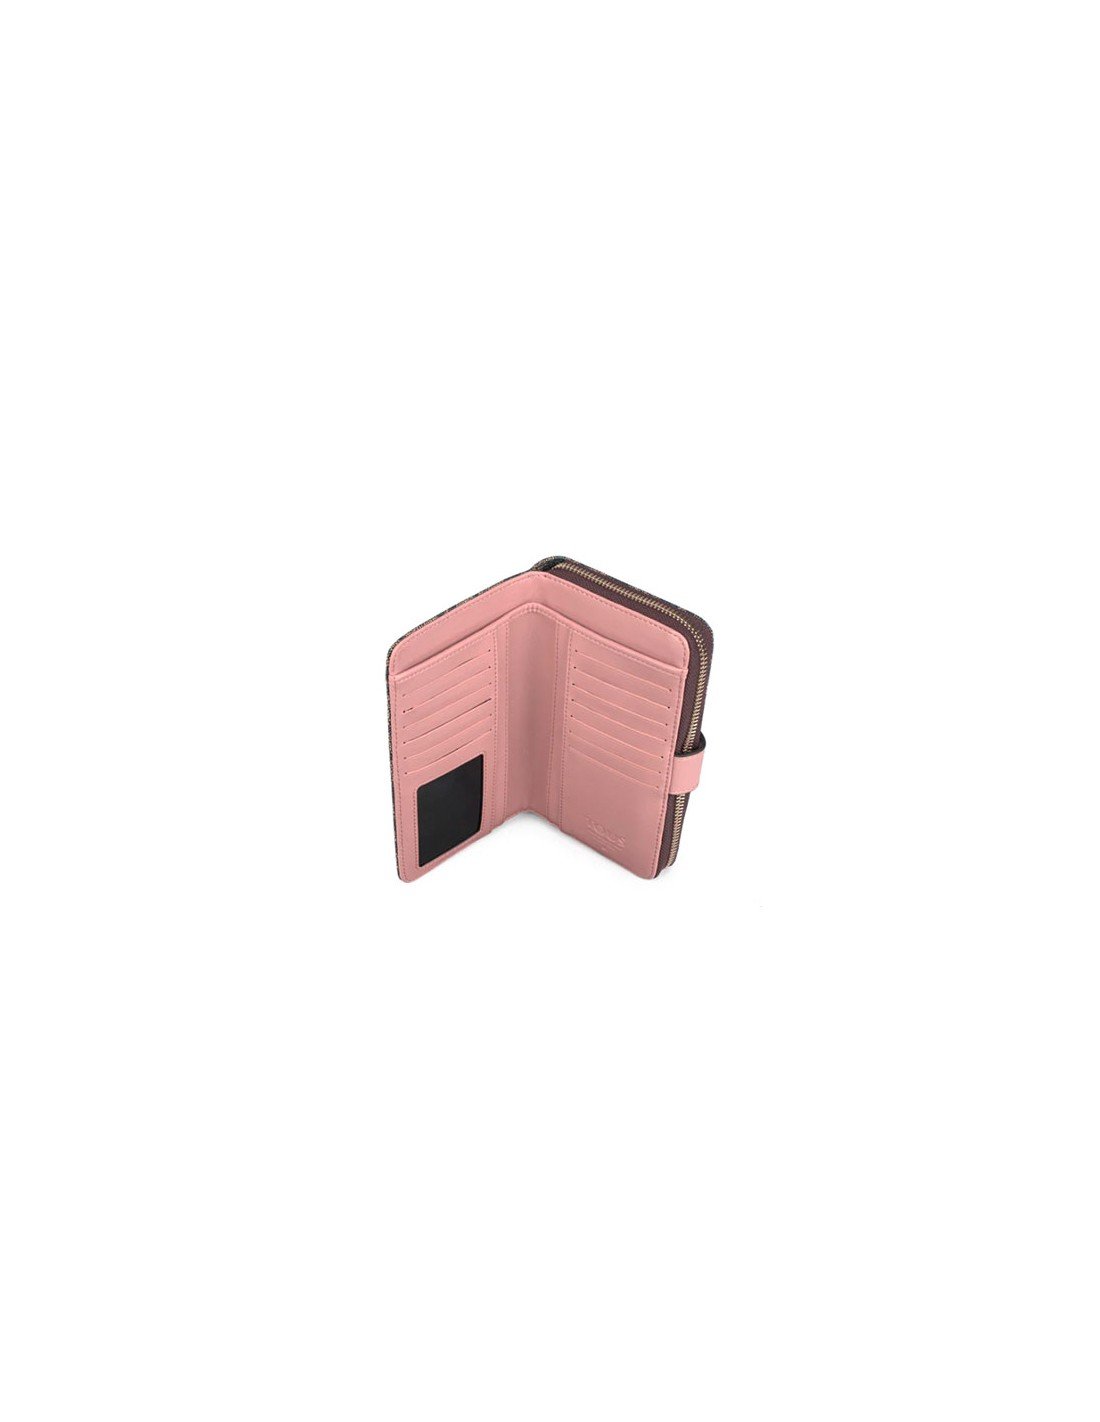 Tous Medium Wallet Kaos Icon Multi Black - Pink, latest offers on Tous Moda  fashion accessories